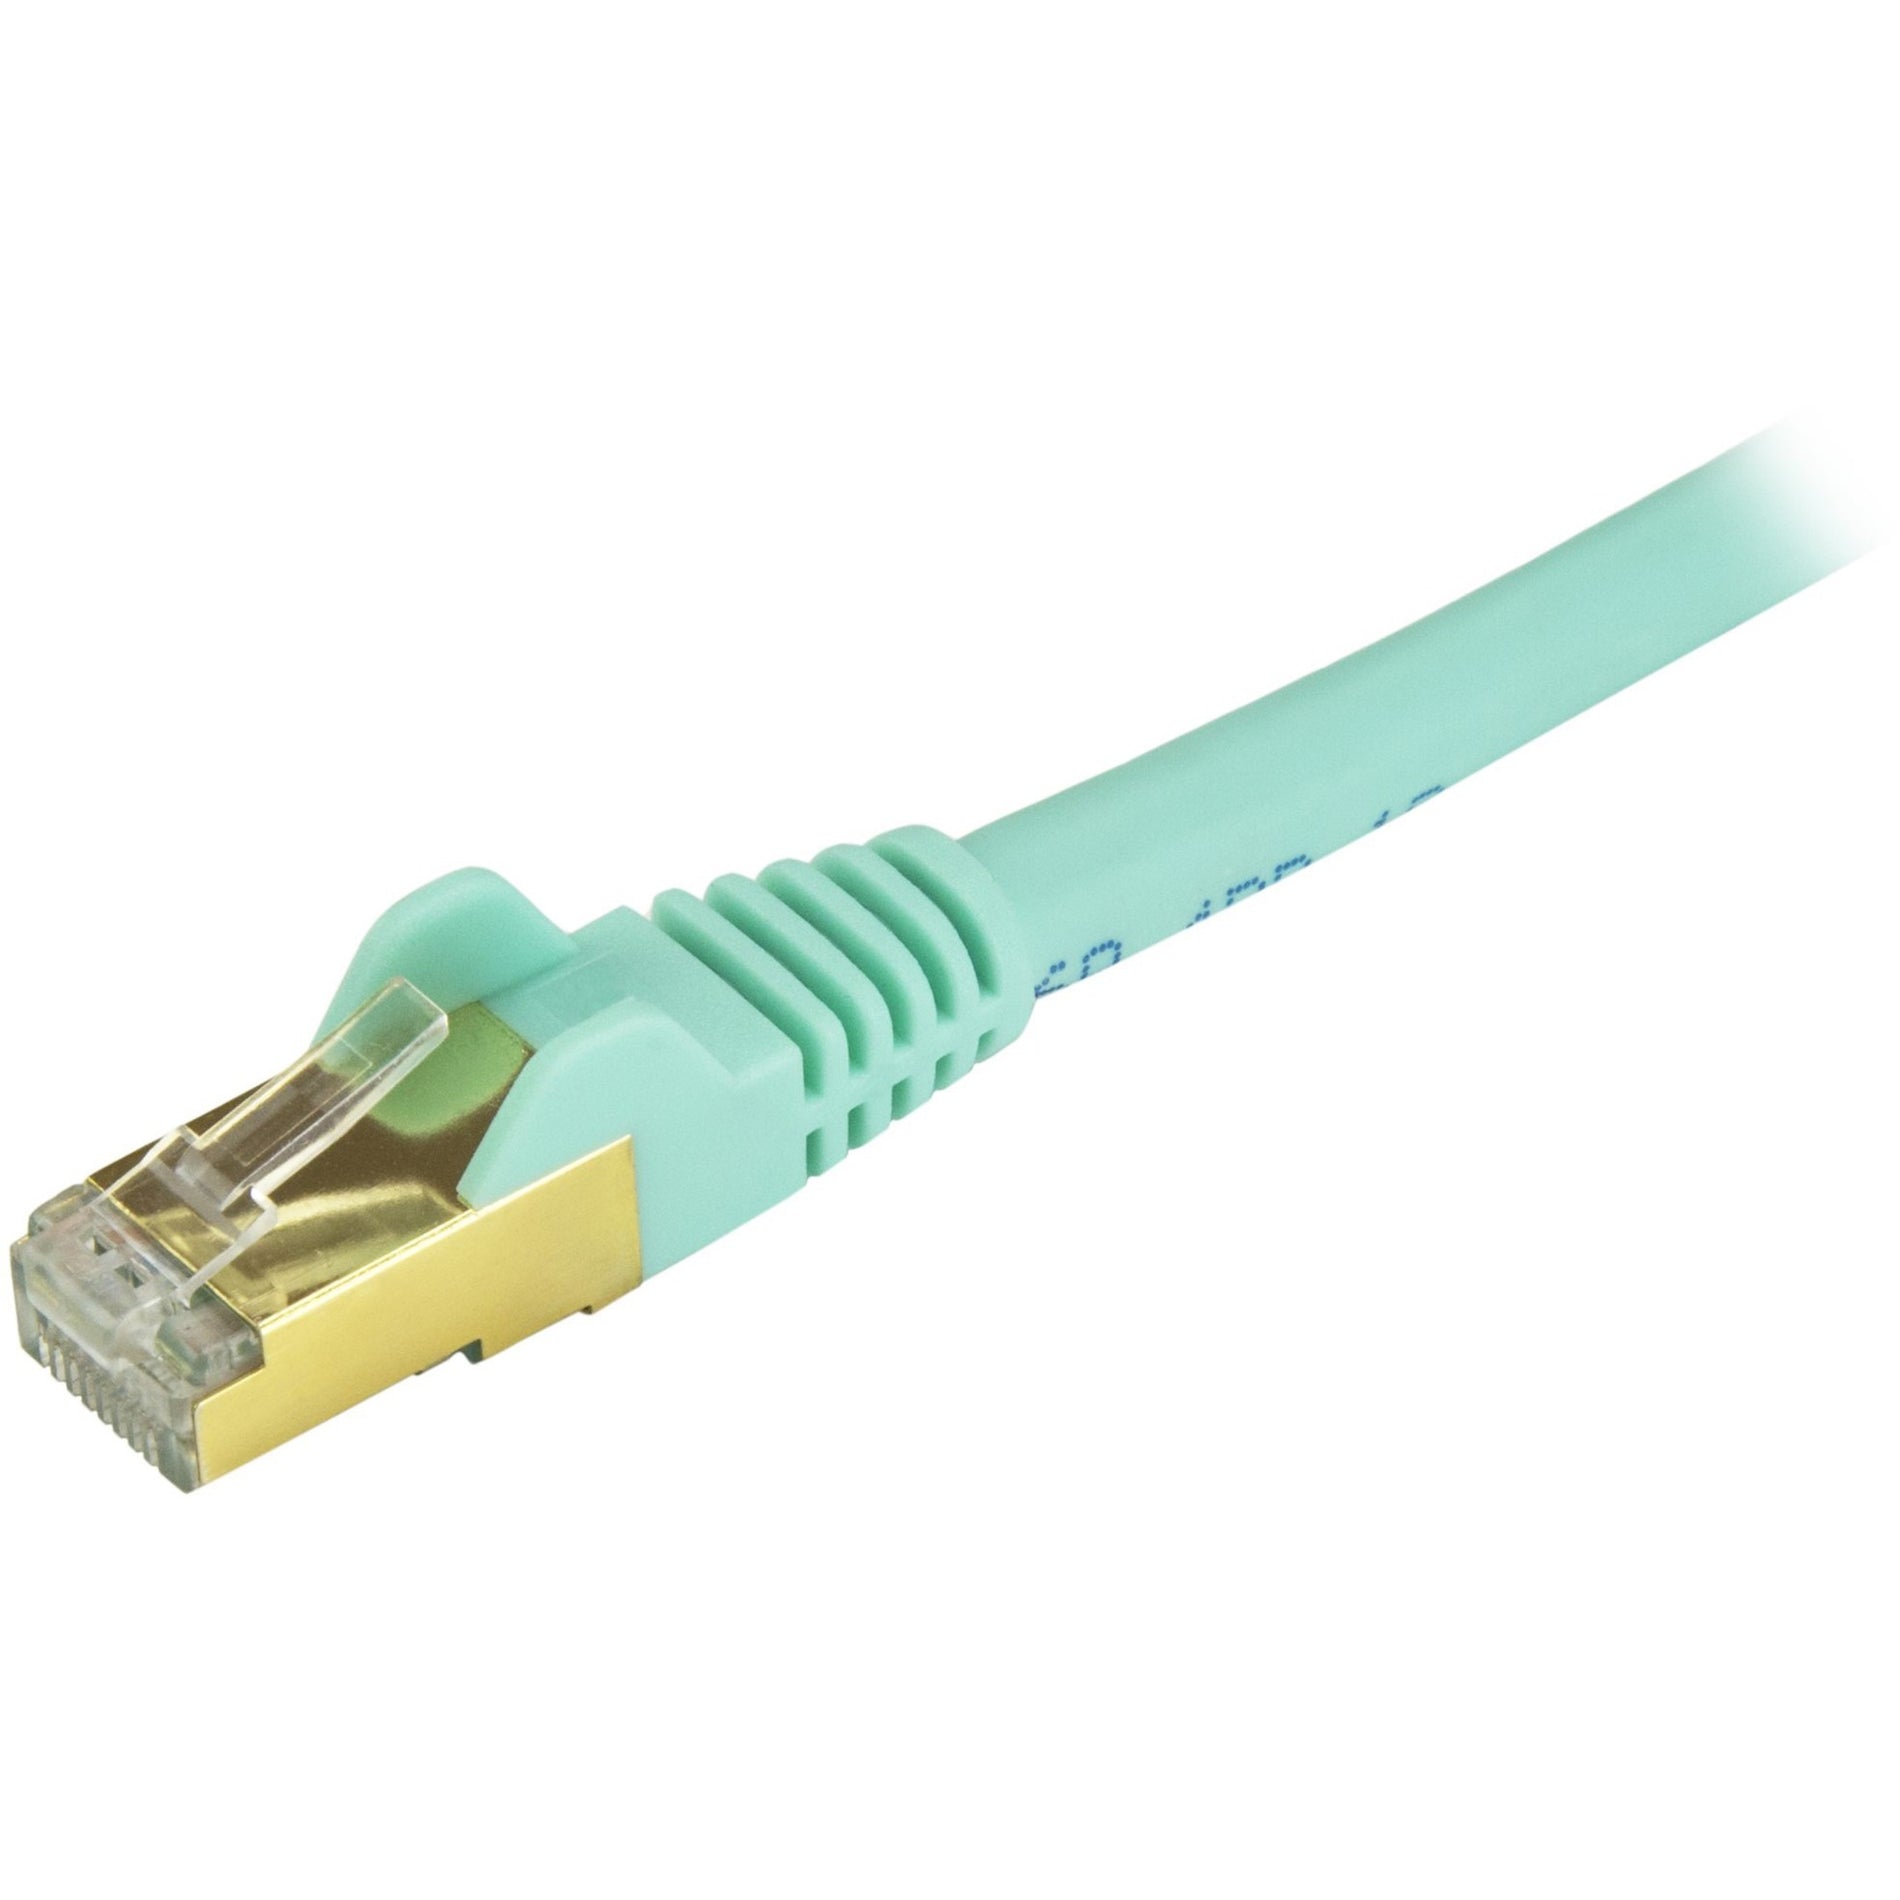 StarTech.com C6ASPAT20AQ Cat6a Ethernet Patch Cable - Shielded (STP) - 20 ft., Aqua, Long Ethernet Cord